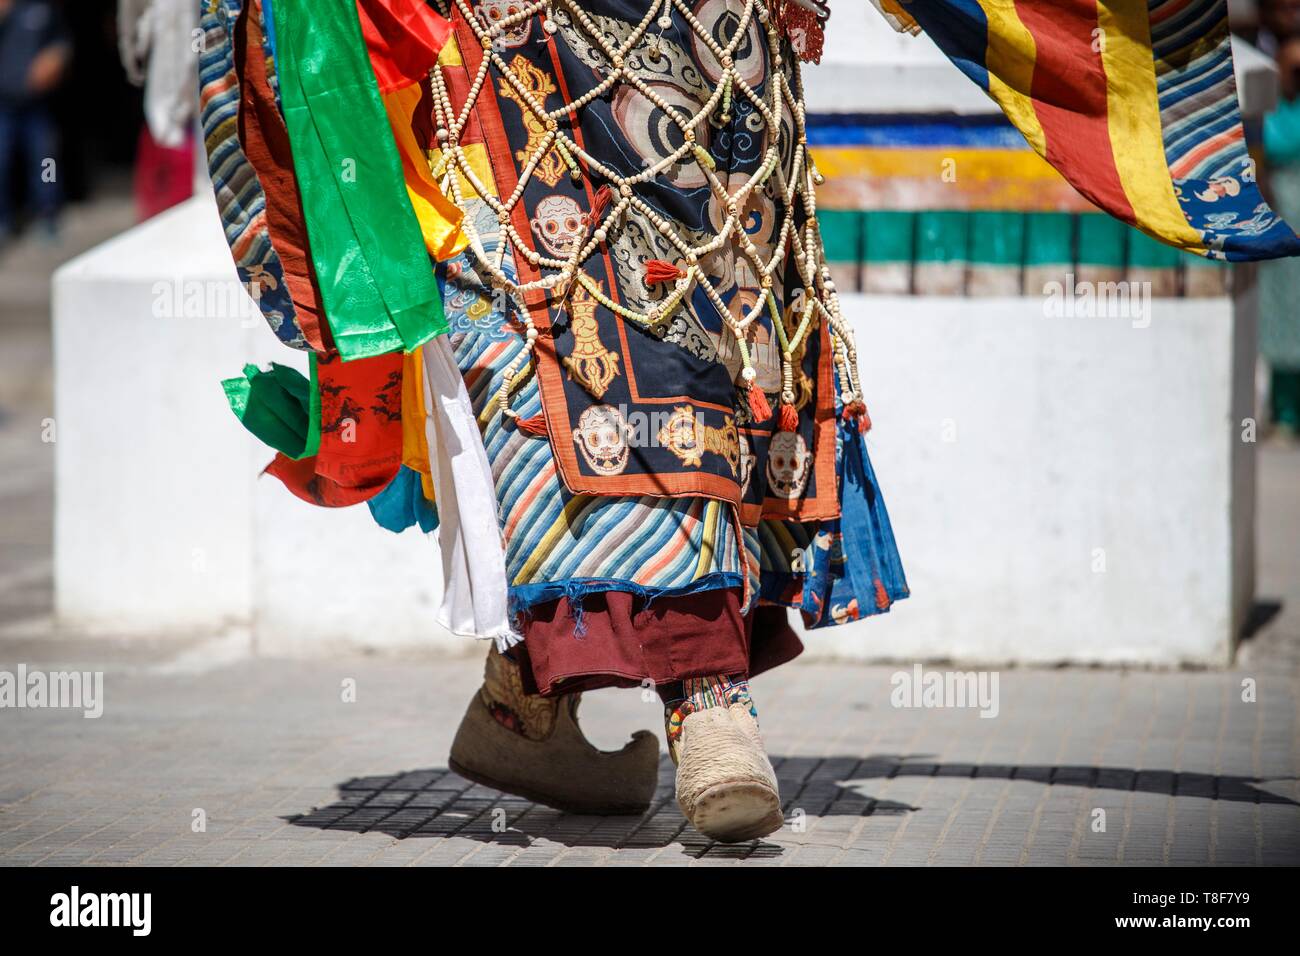 Indien, Jammu und Kaschmir, Himalaya, Ladakh, Indus Valley, Leh, Ladakh Festival, Gompa Soma buddhistischer Tempel (Chokhang), ein Mönch in einem bunten Kostüm führt rituelle Tänze im Innenhof des Tempels Stockfoto